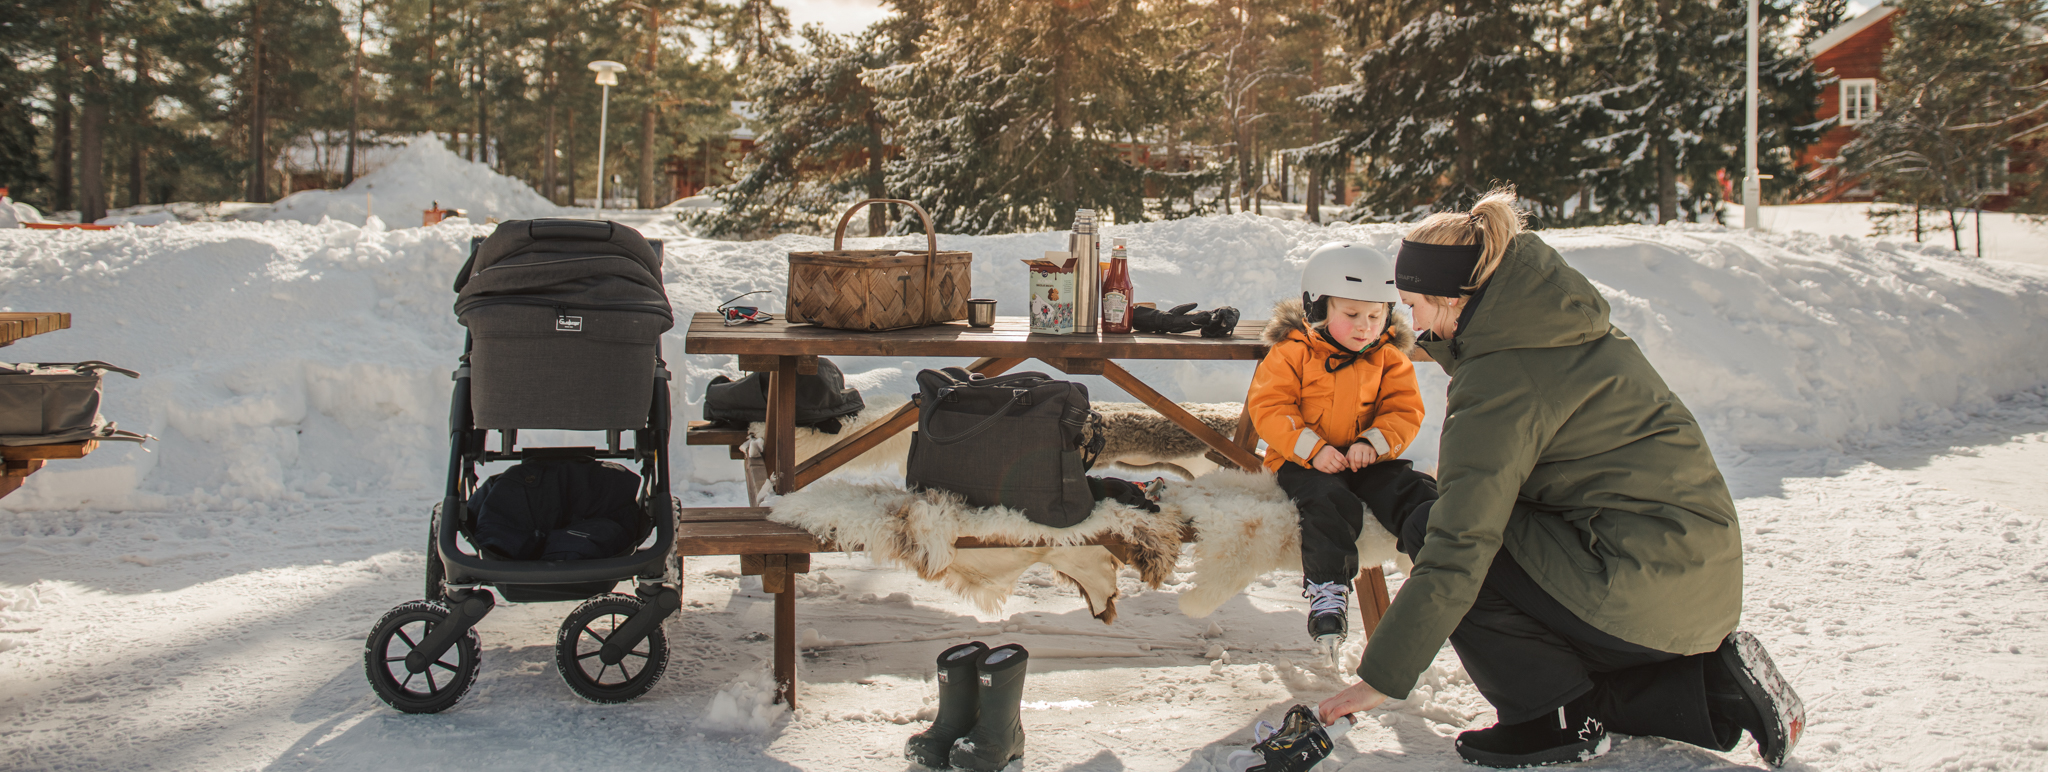 Vuxna och barn med slalomutrustning sitter på liggunderlag i snön.